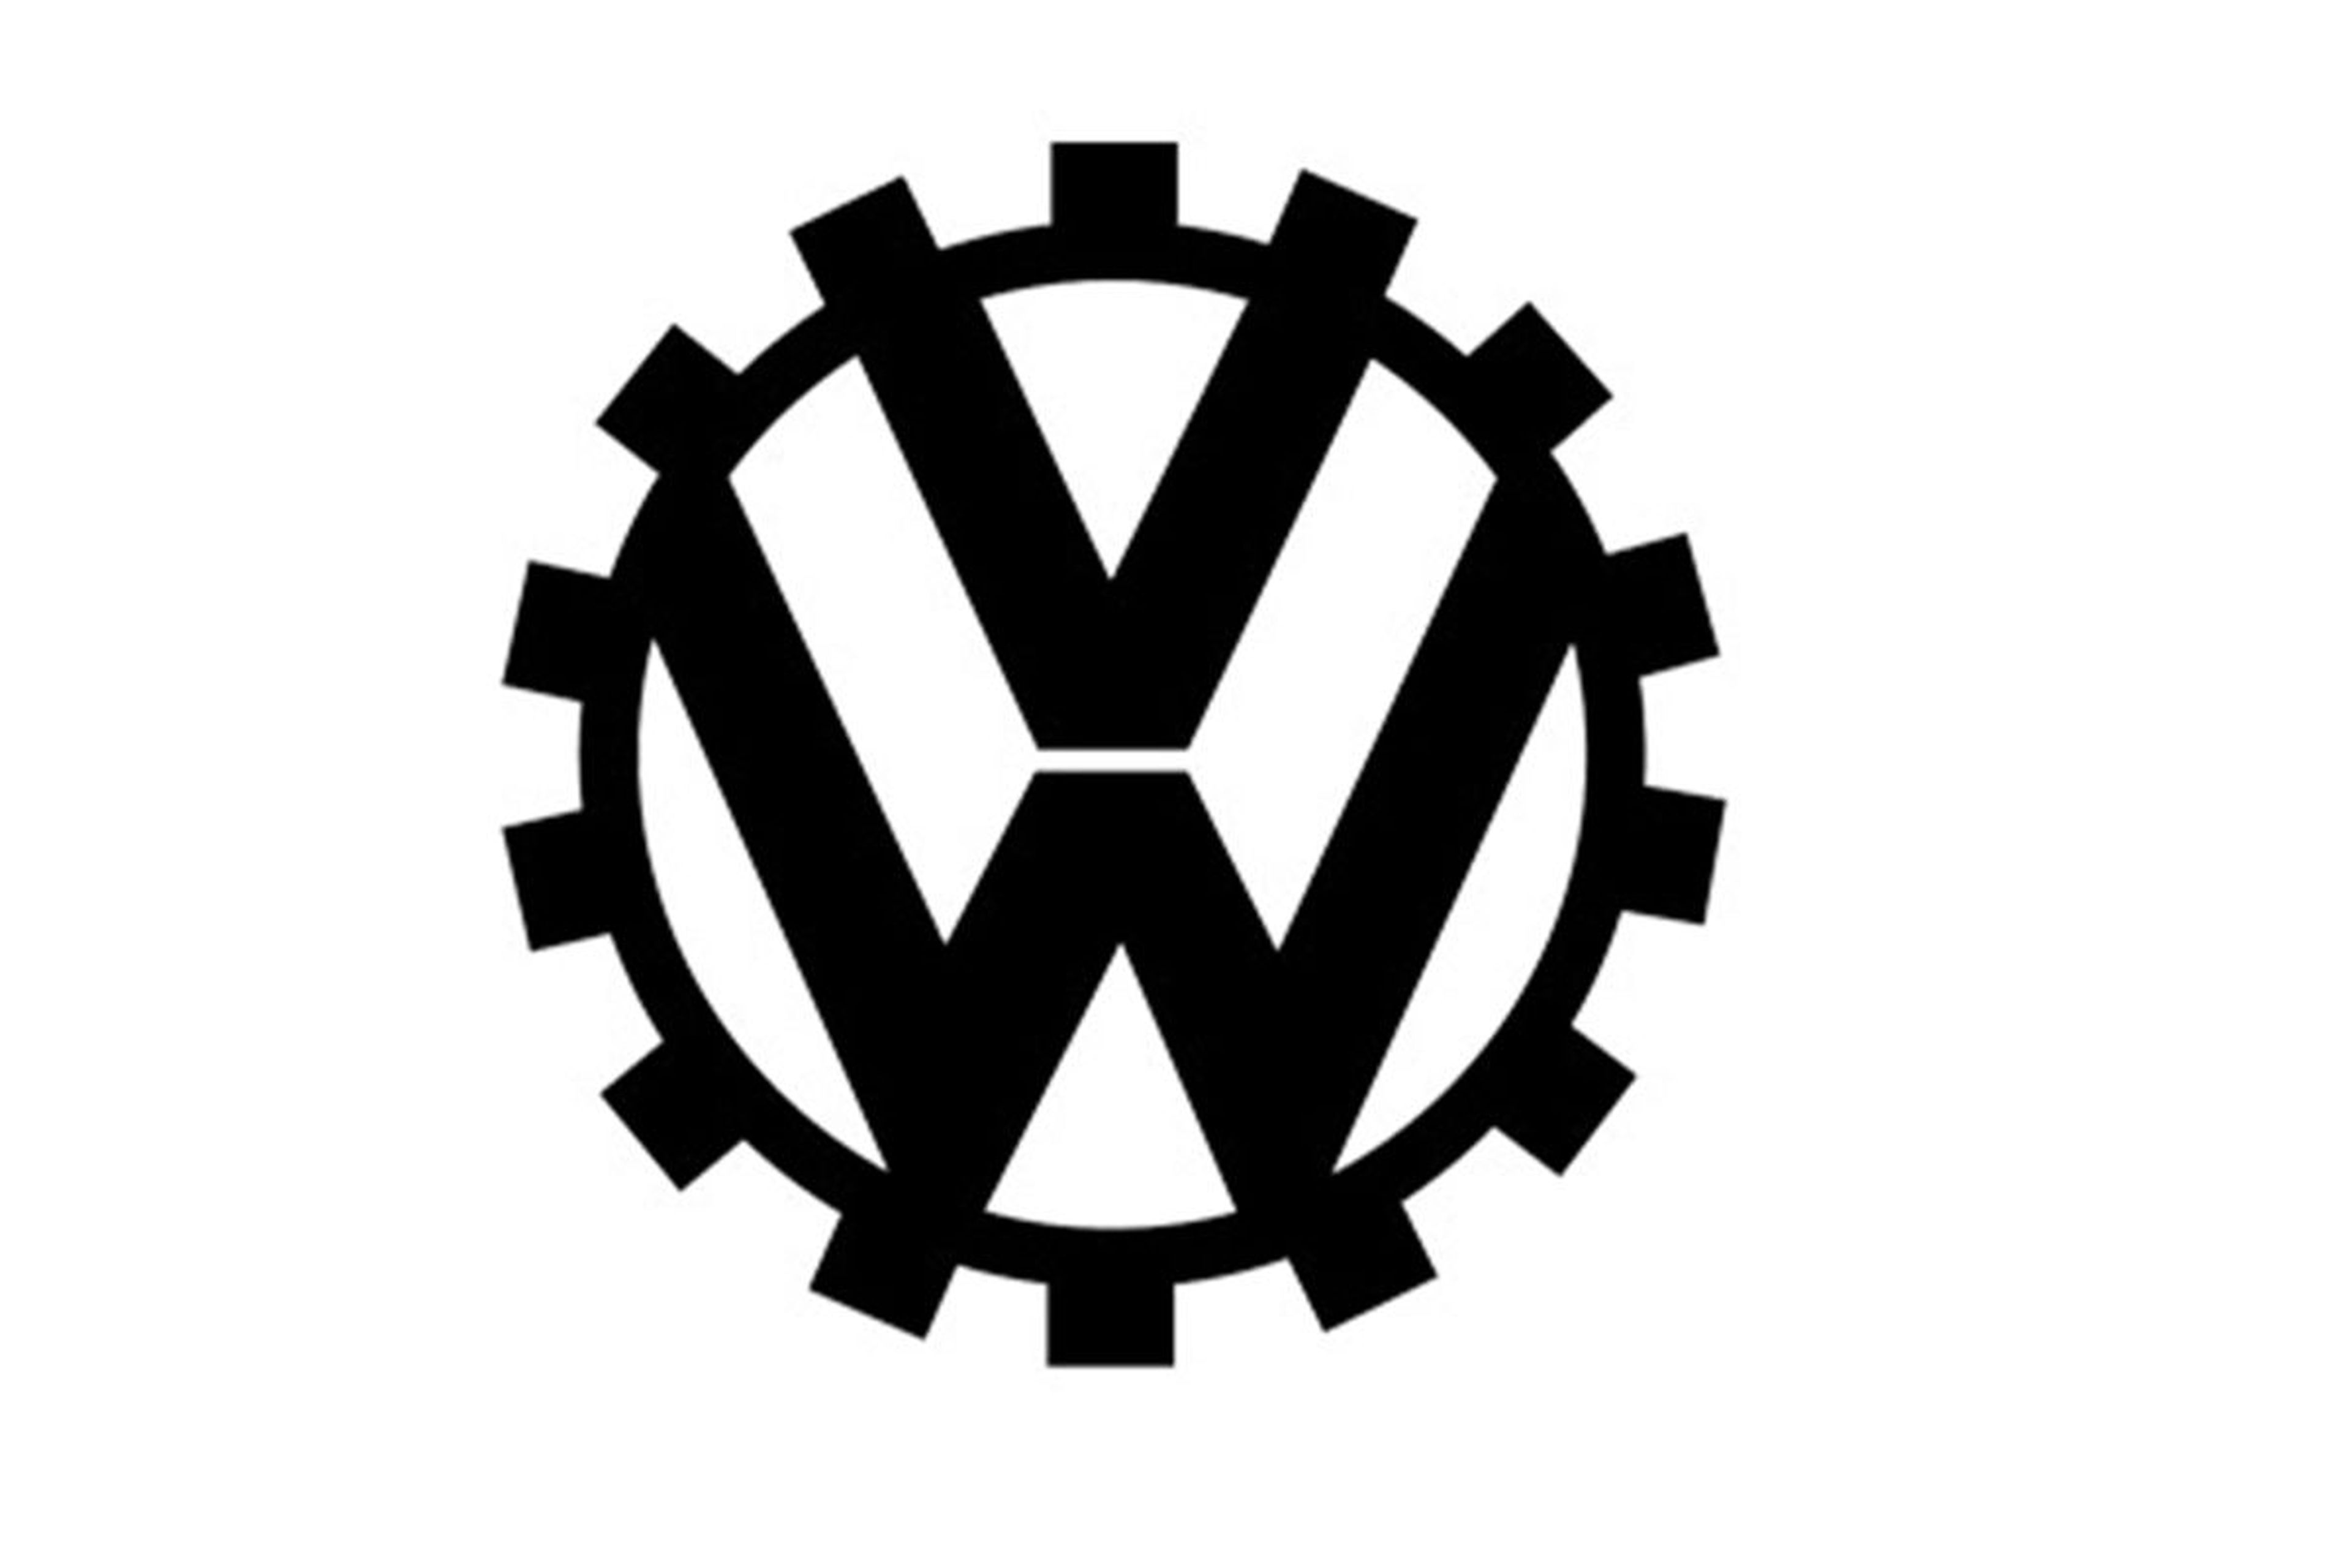 El logotipo de Volkswagen. Historia